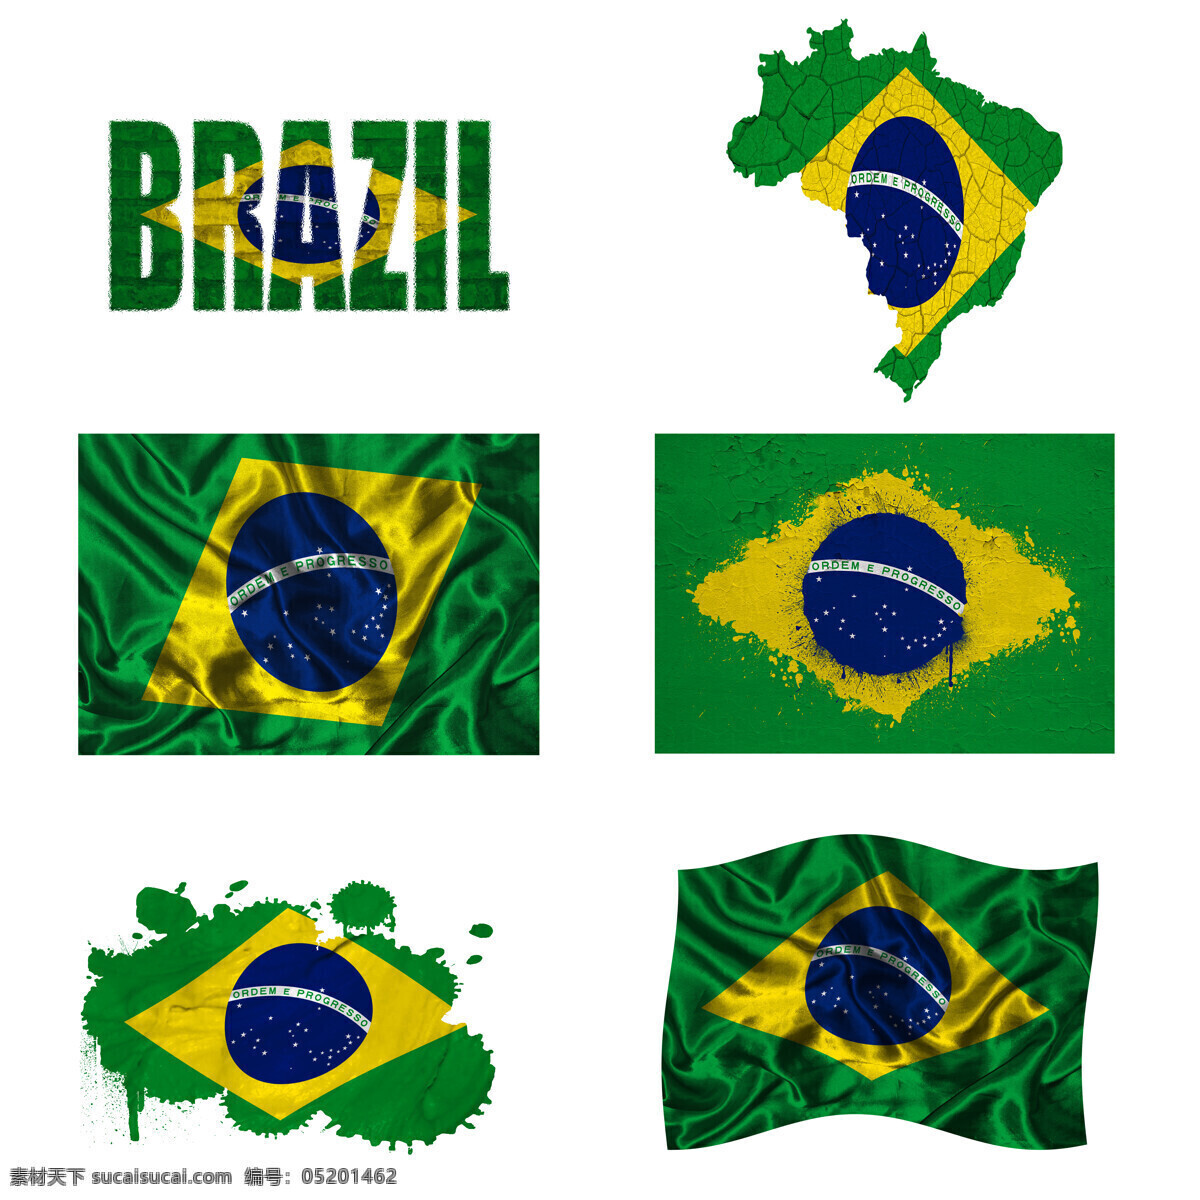 巴西国旗地图 巴西国旗 地图 国旗图案 旗帜 其他类别 生活百科 白色